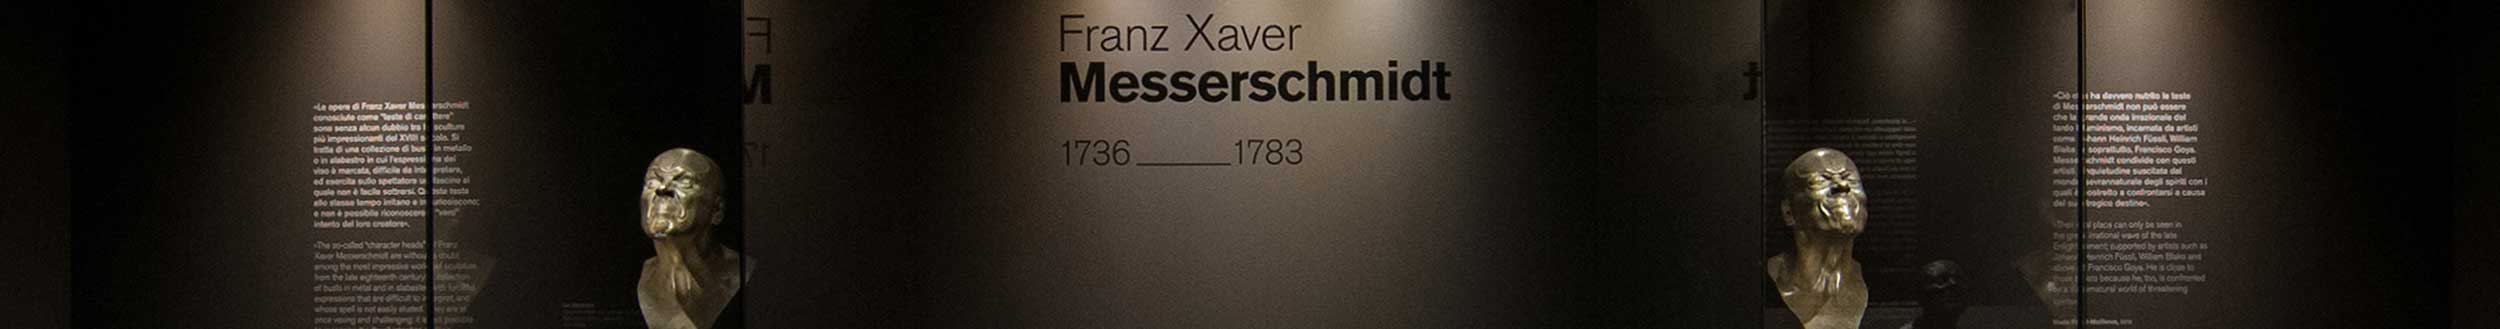 Franz Xaver Messerschmidt 1736-1783